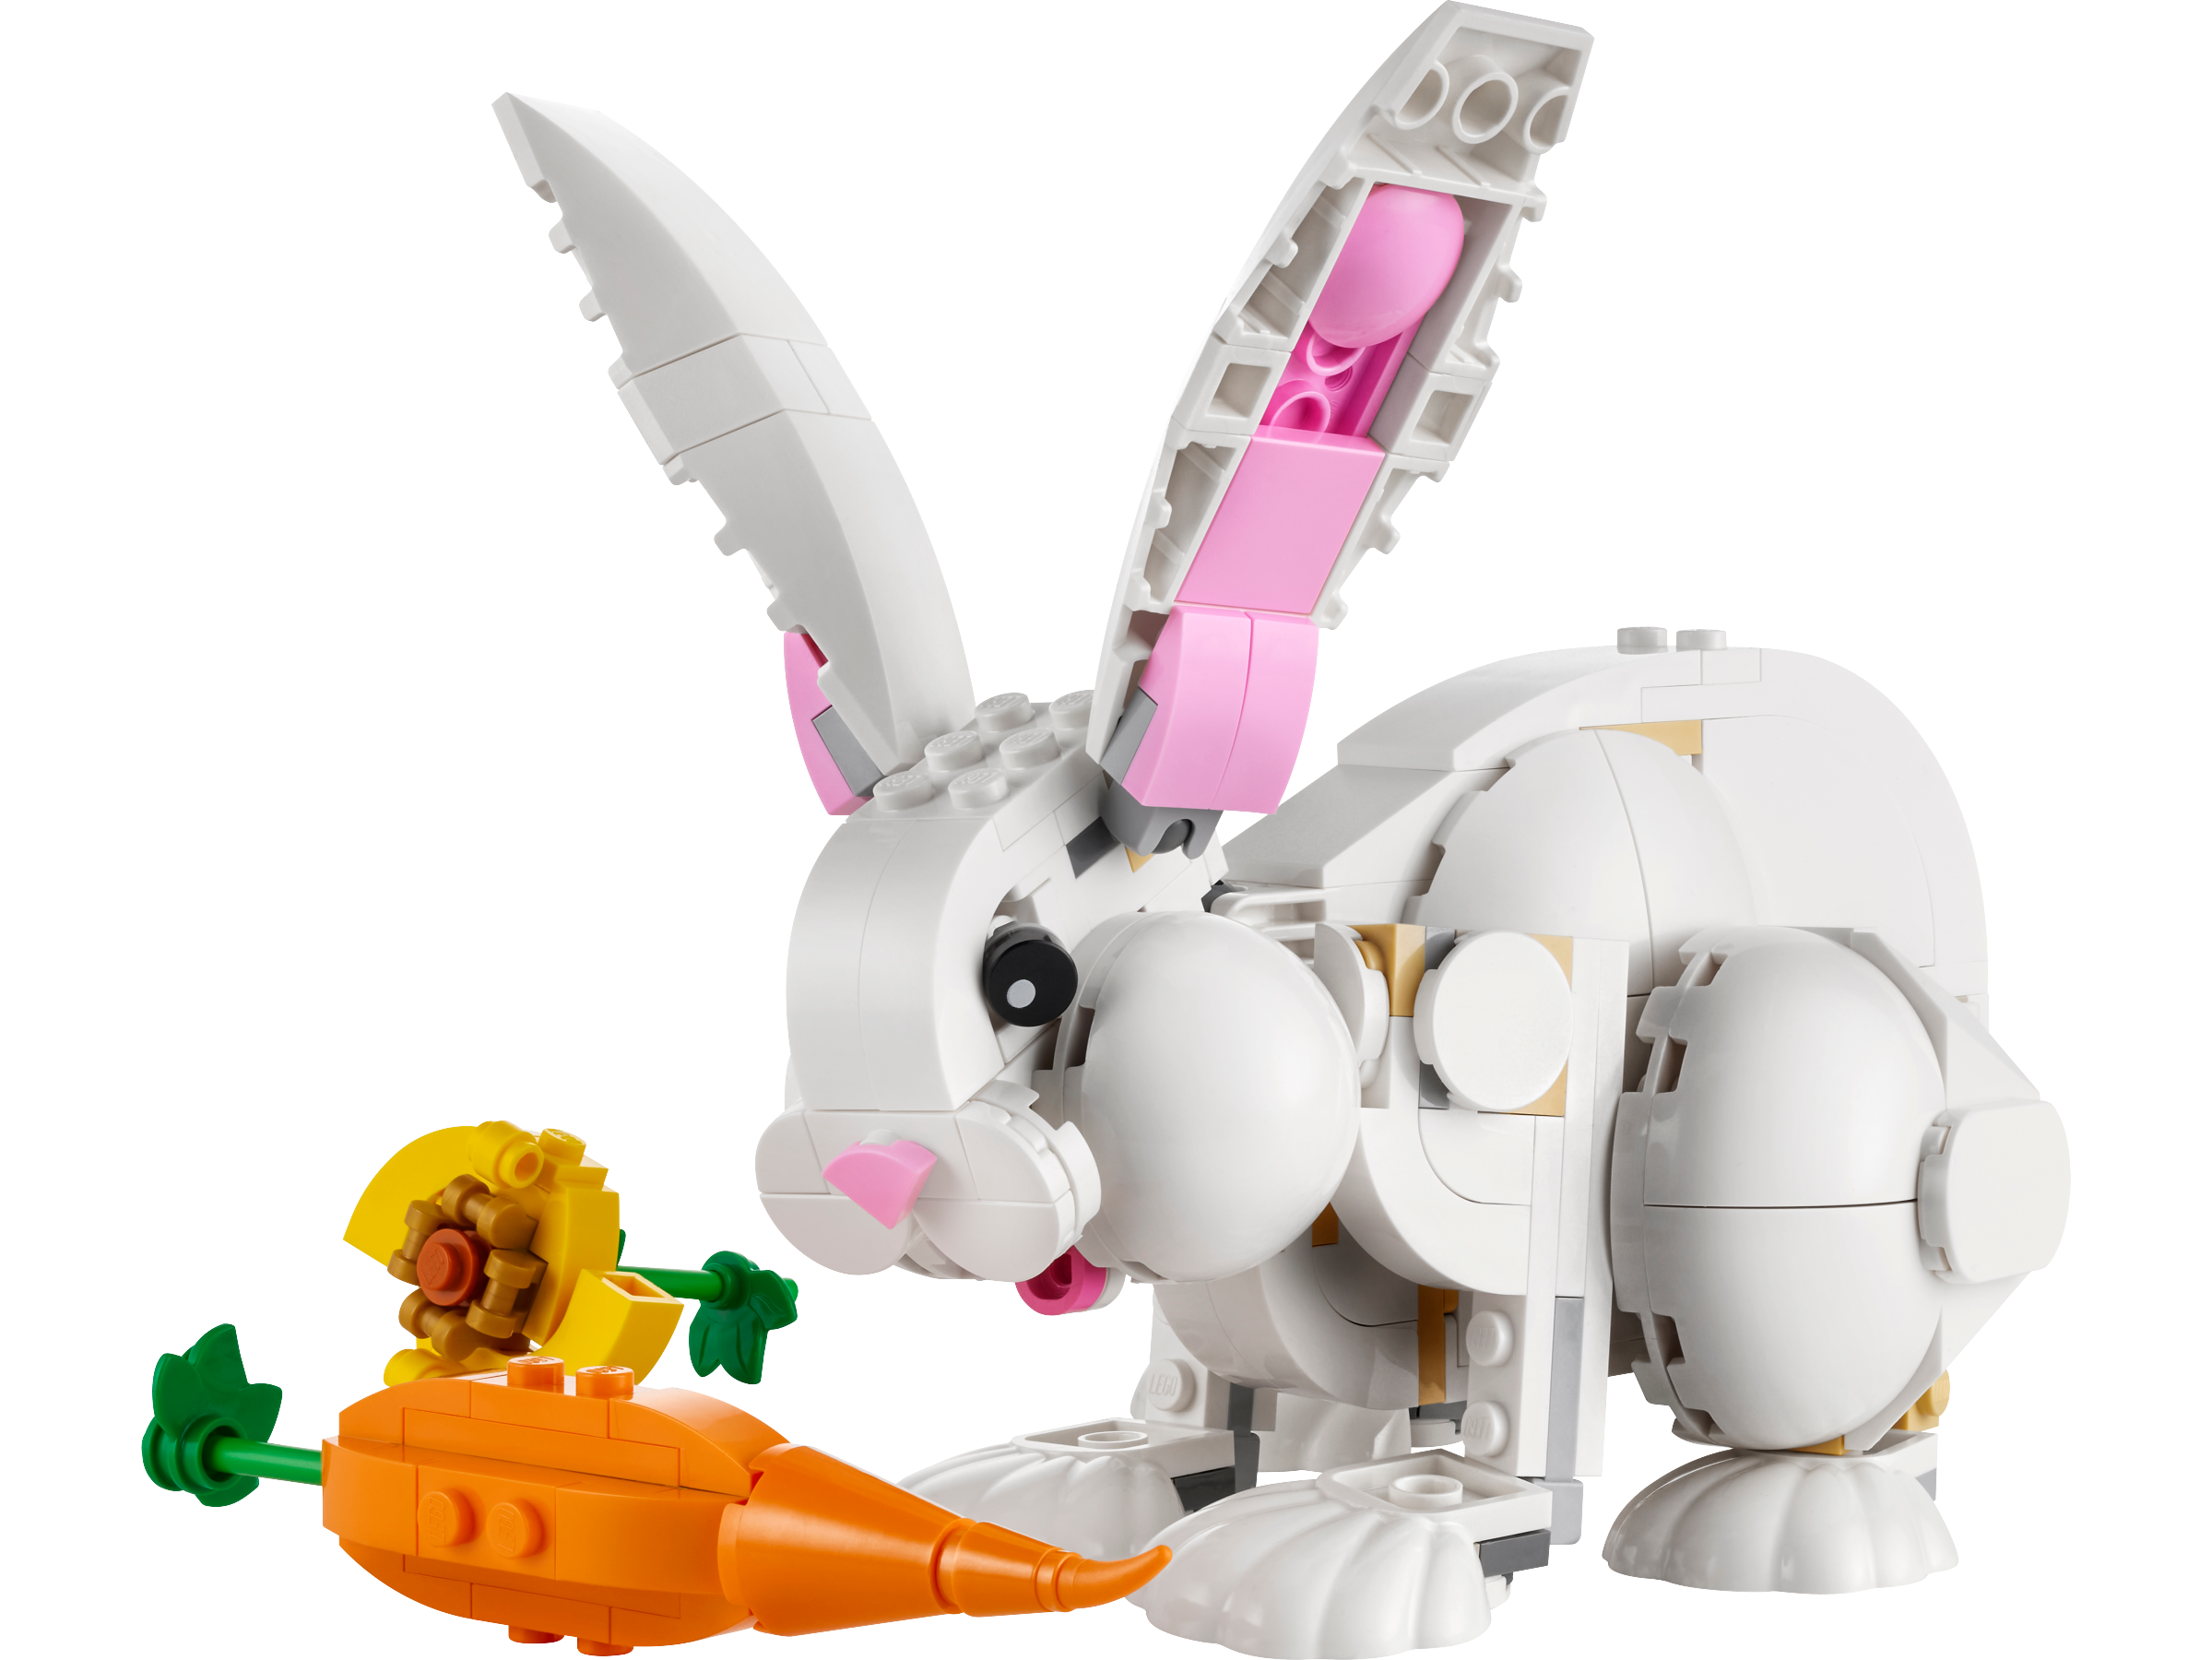 Lego 31133 White Rabbit